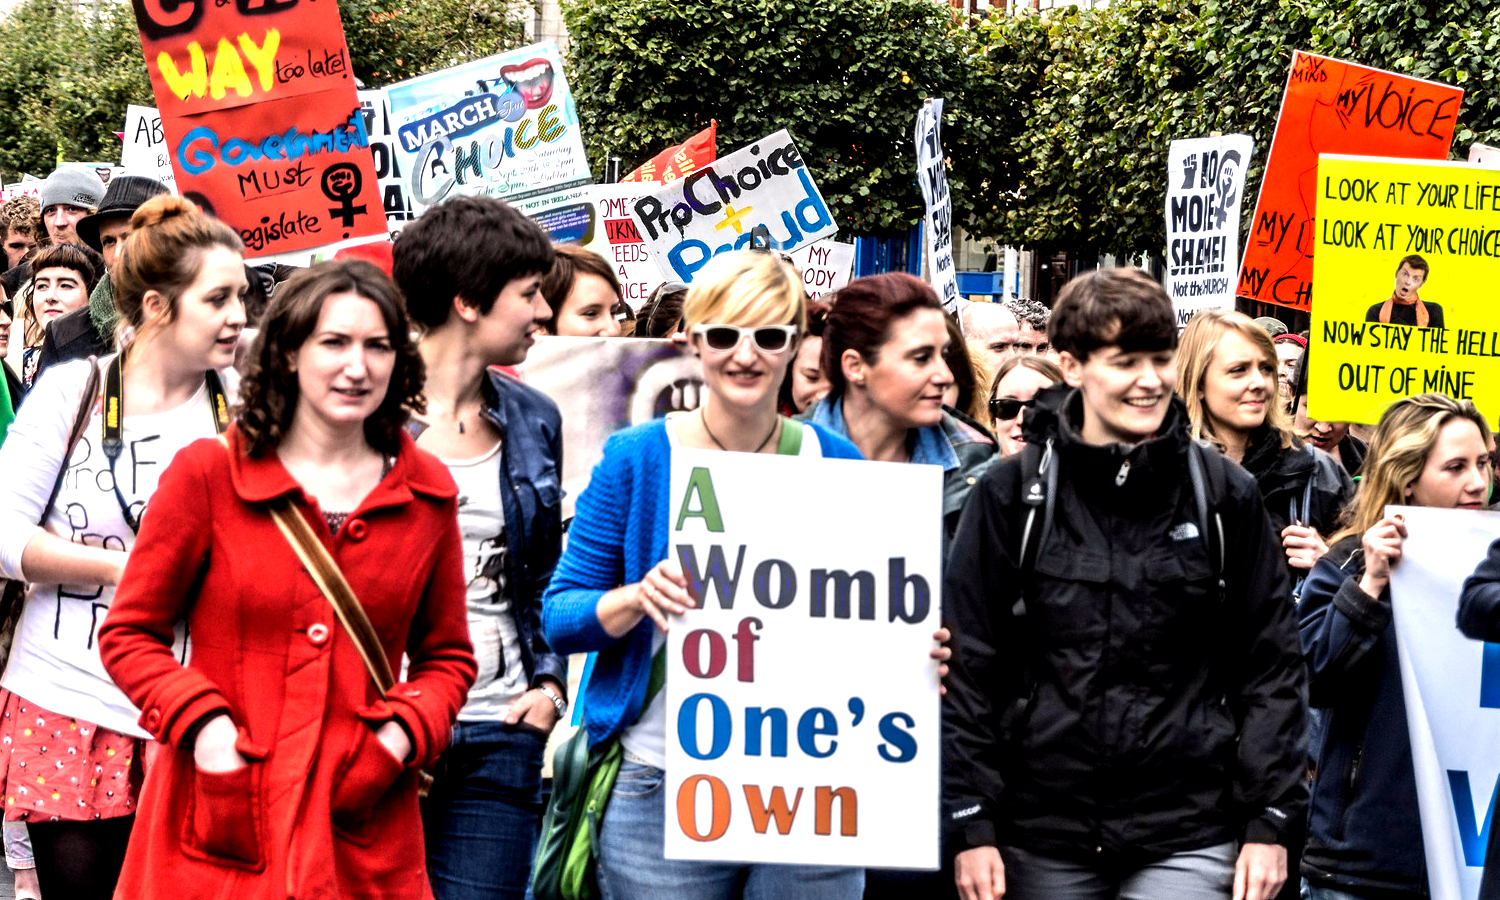 Берлин: одна демонстрация против абортов и шесть демонстраций за право на аборт